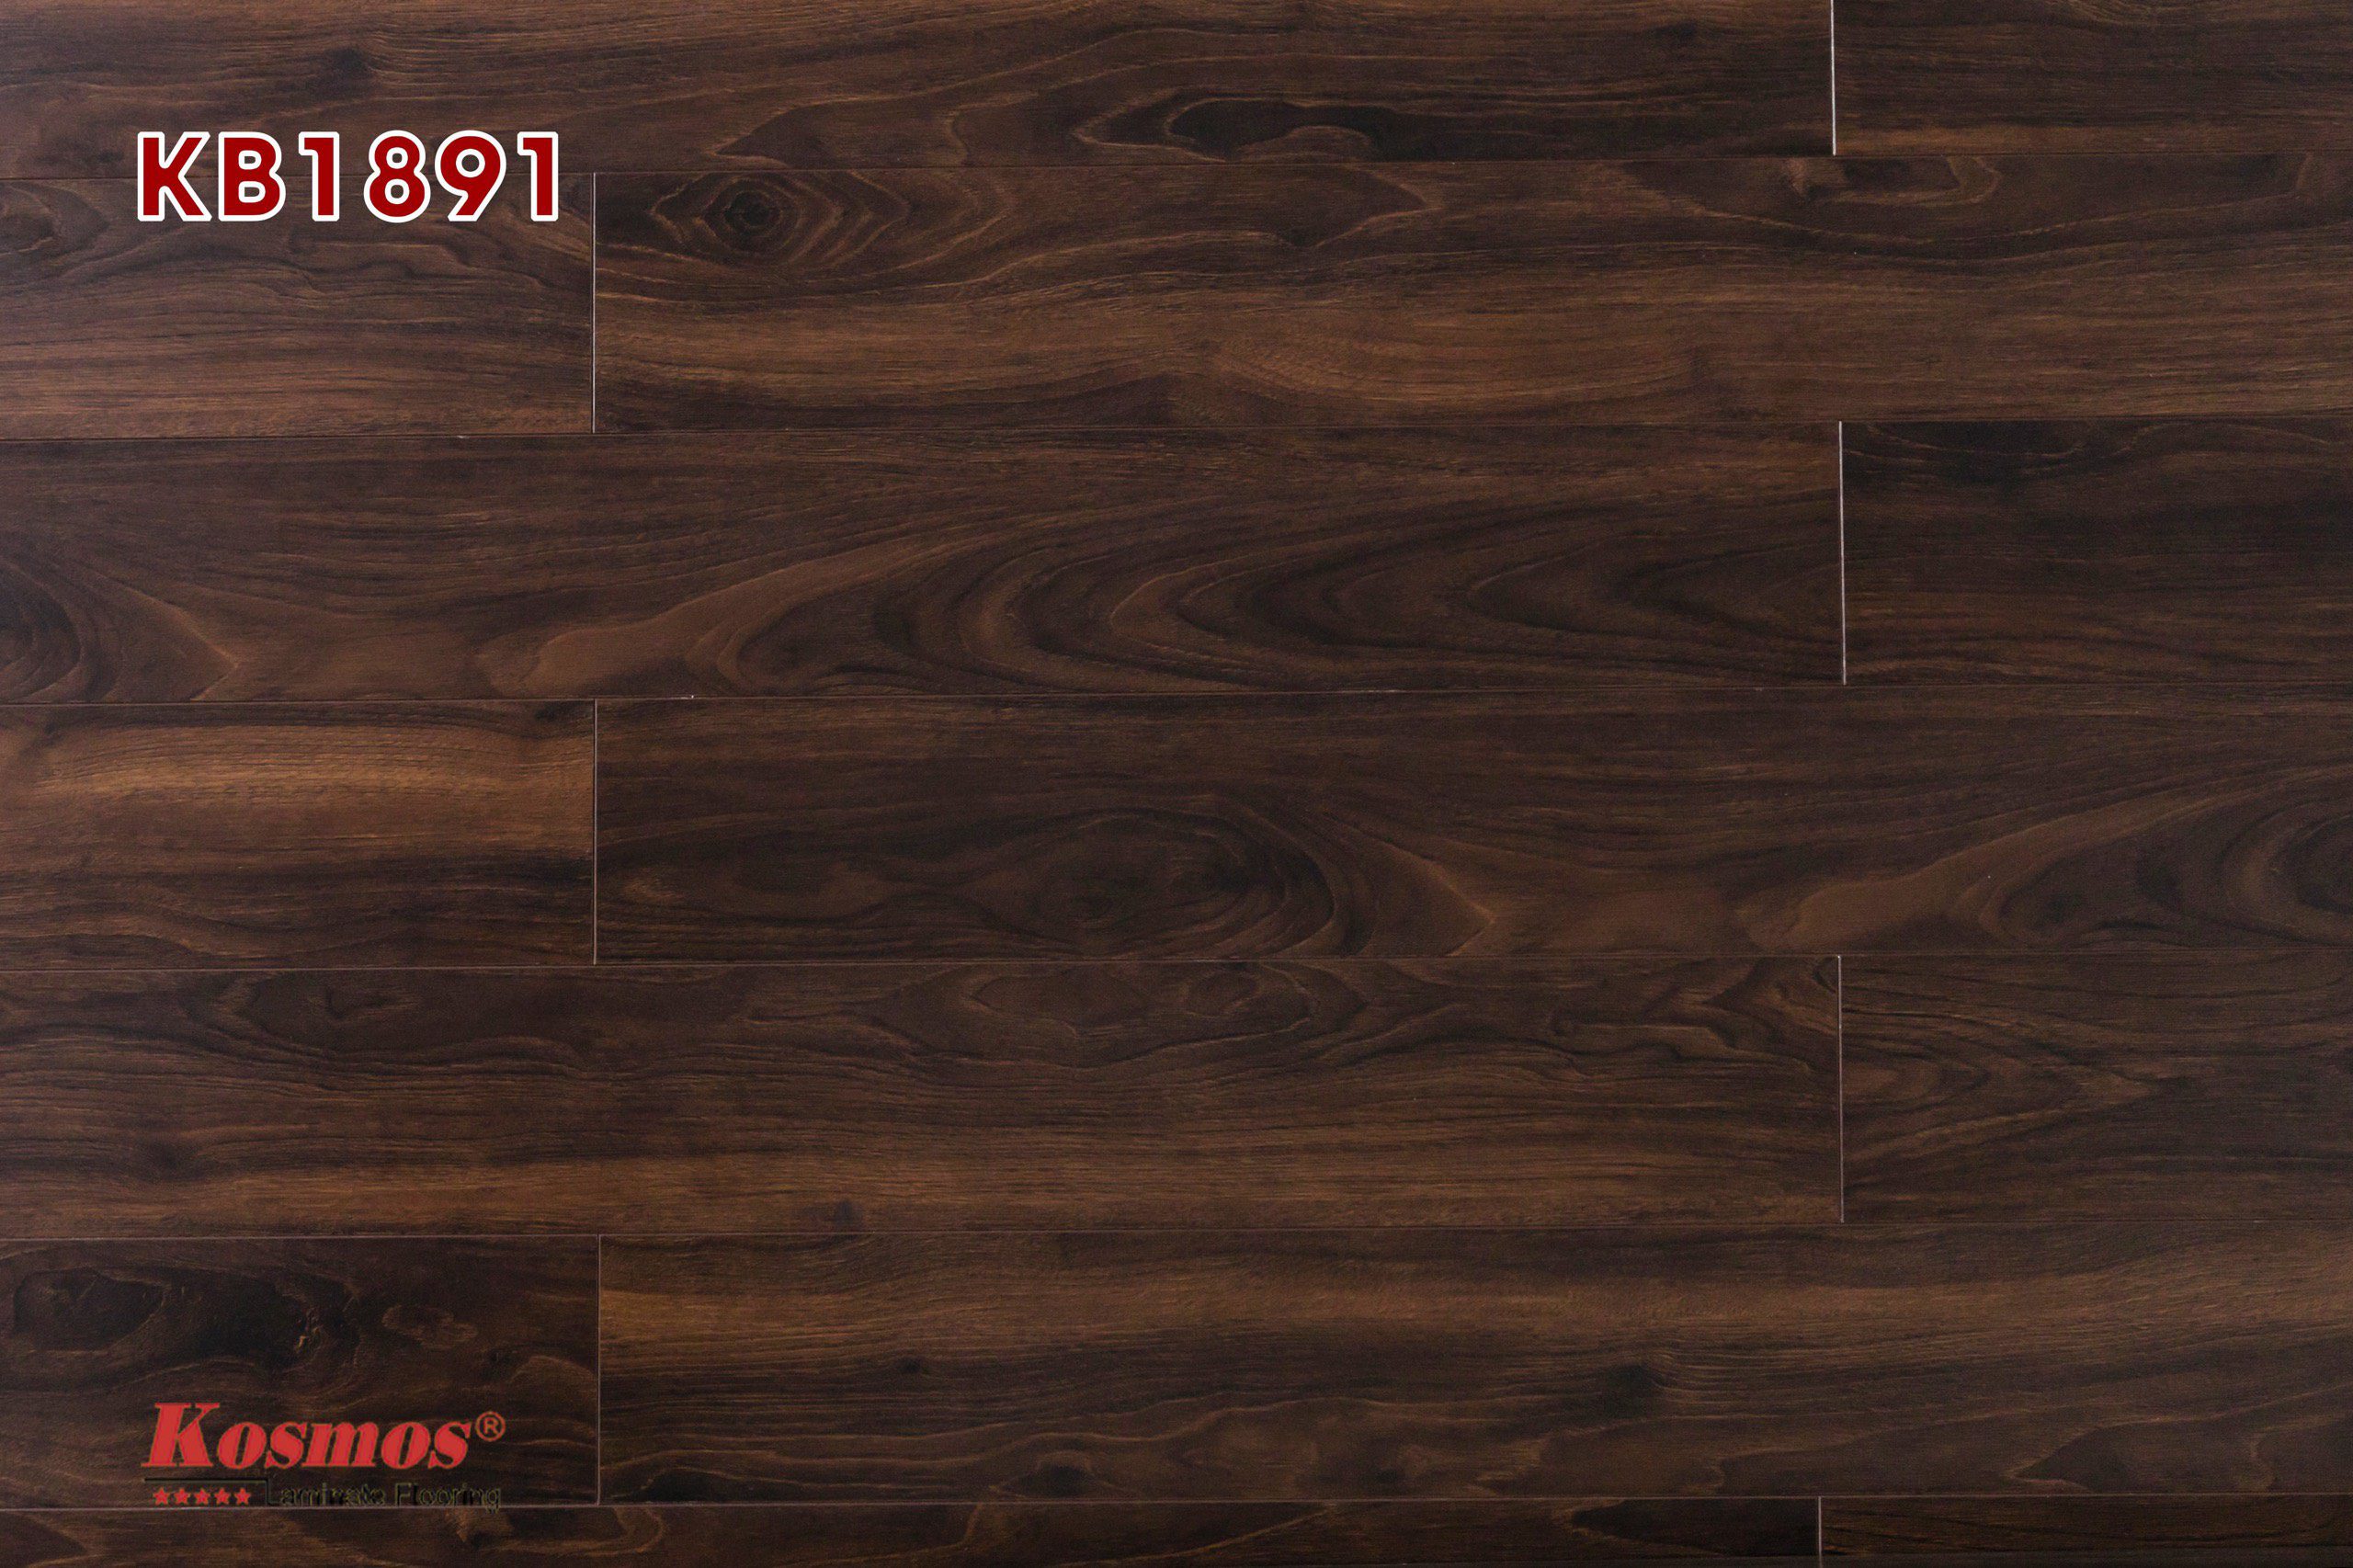 Sàn gỗ kosmos 12mm KB1891